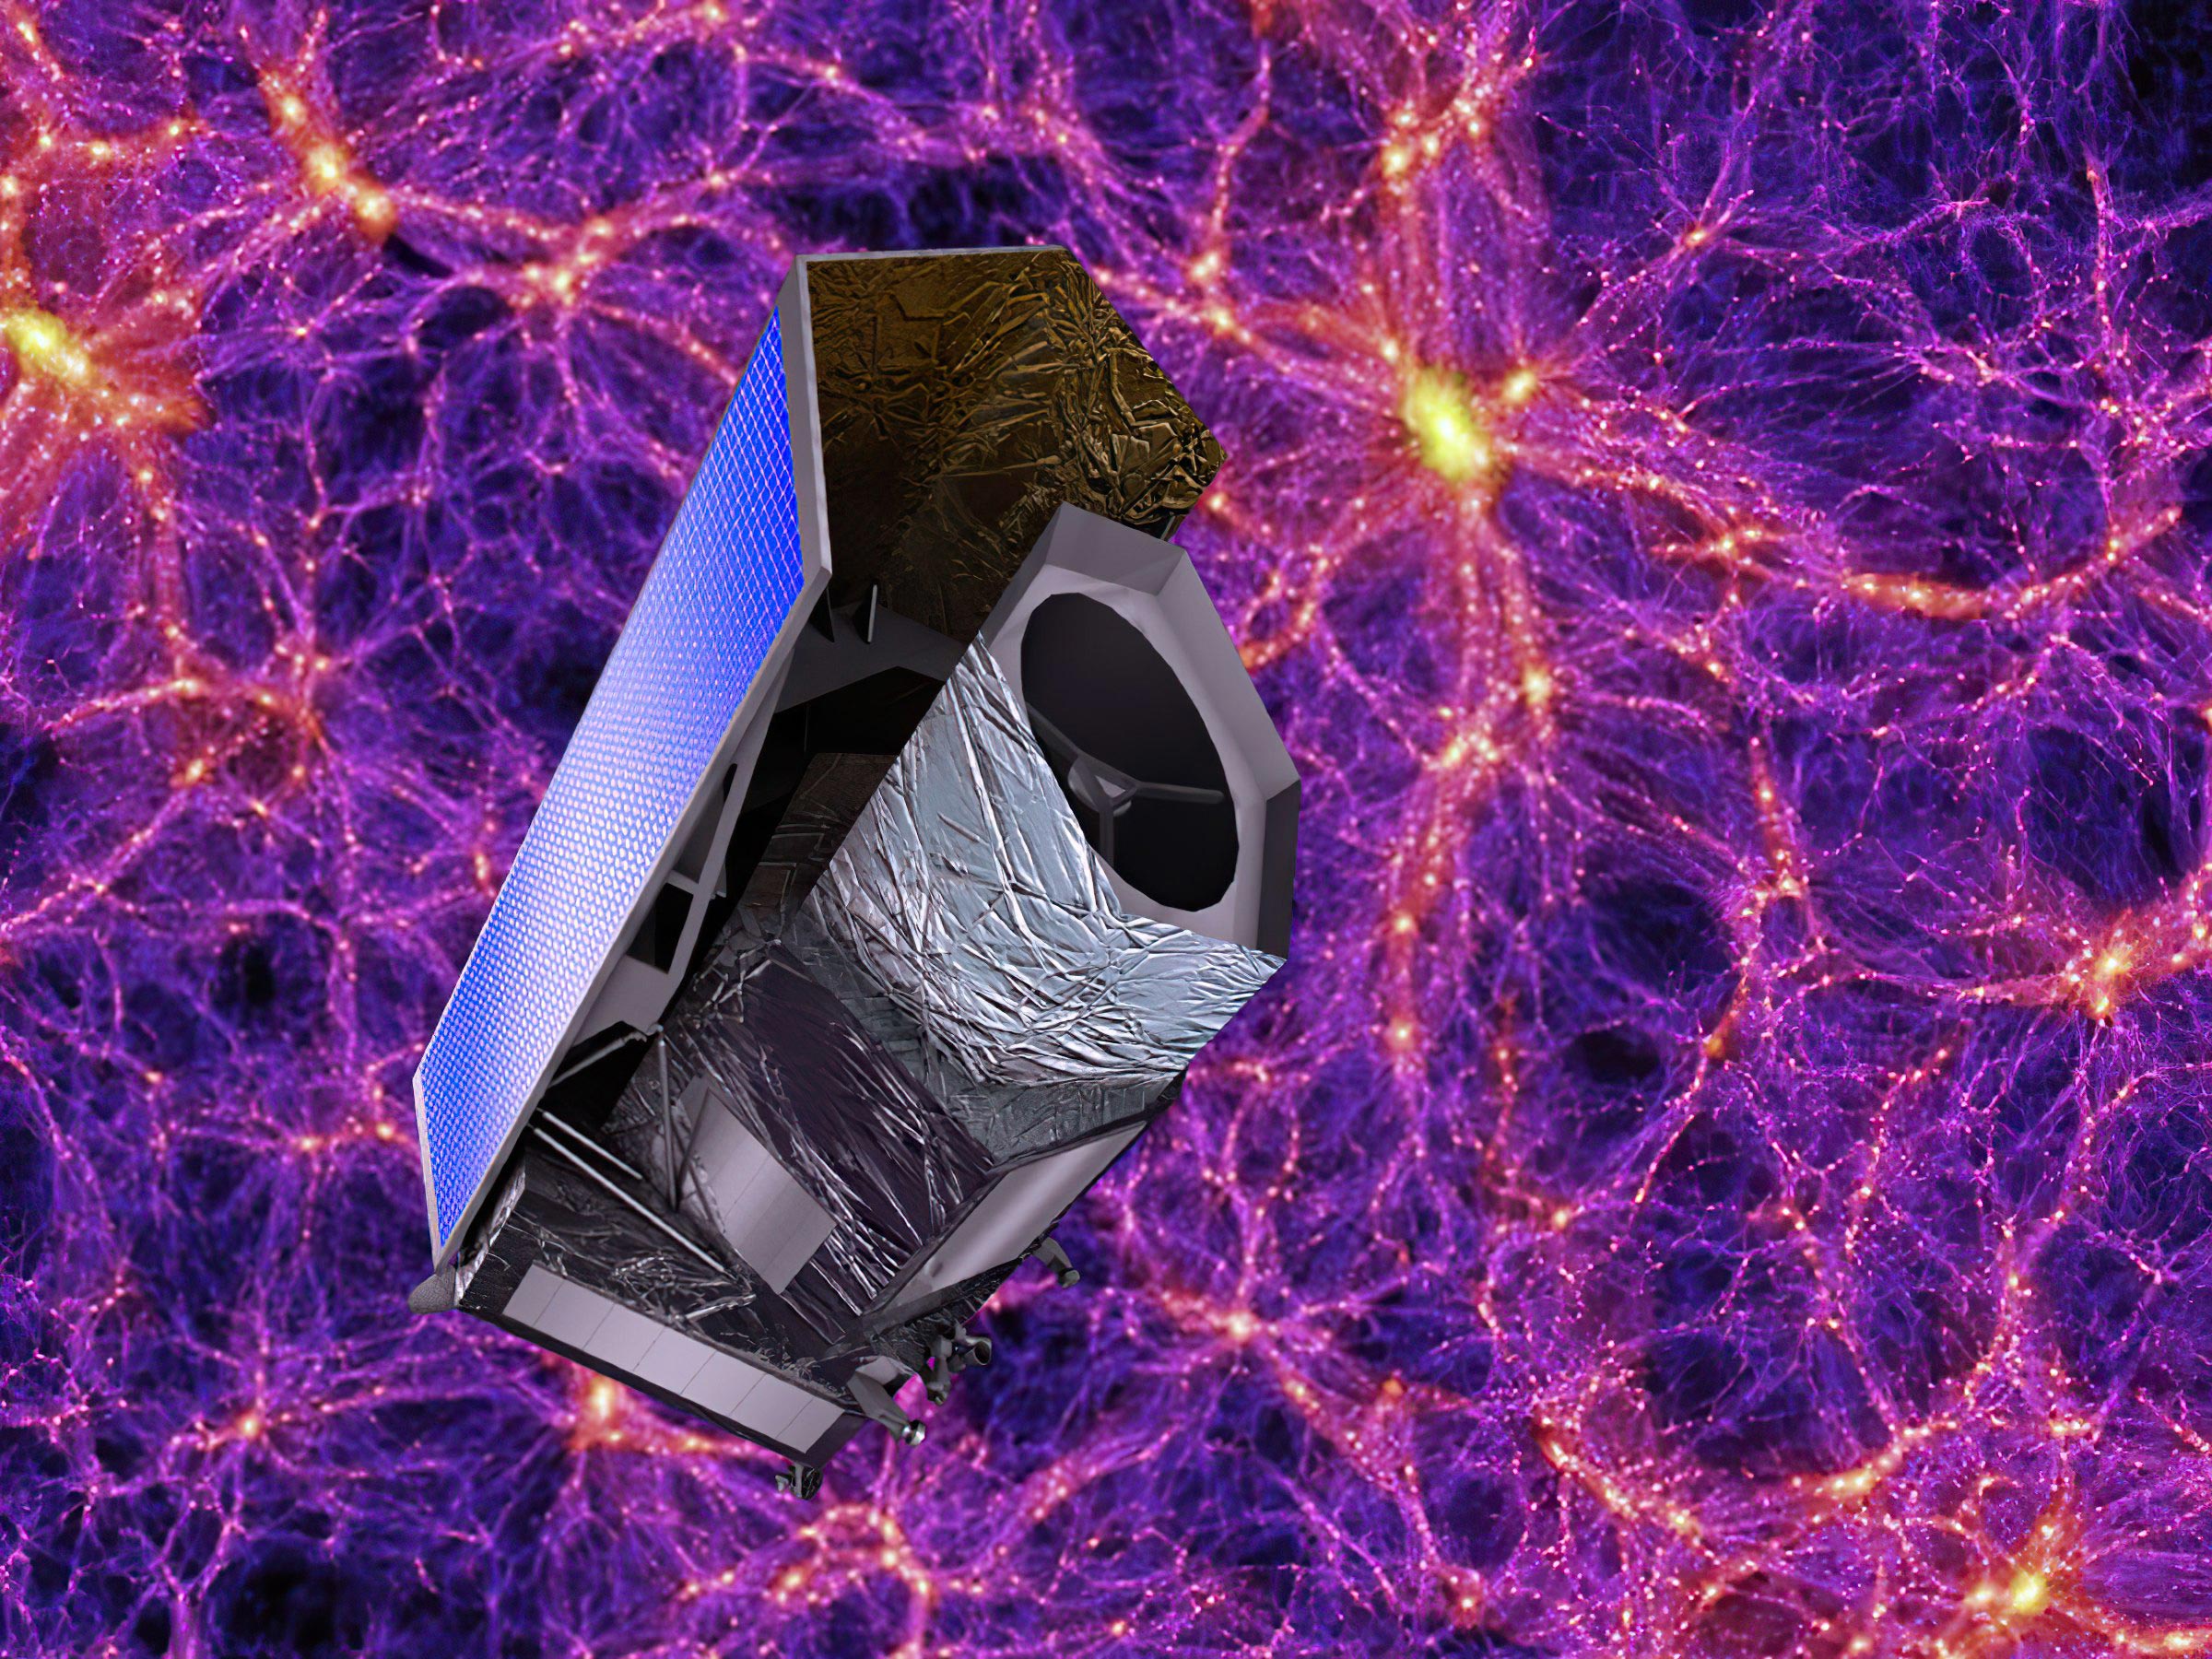 ユークリッド宇宙望遠鏡「ダーク・ユニバース」は、最も深い宇宙の謎を解明するという使命を担っています。